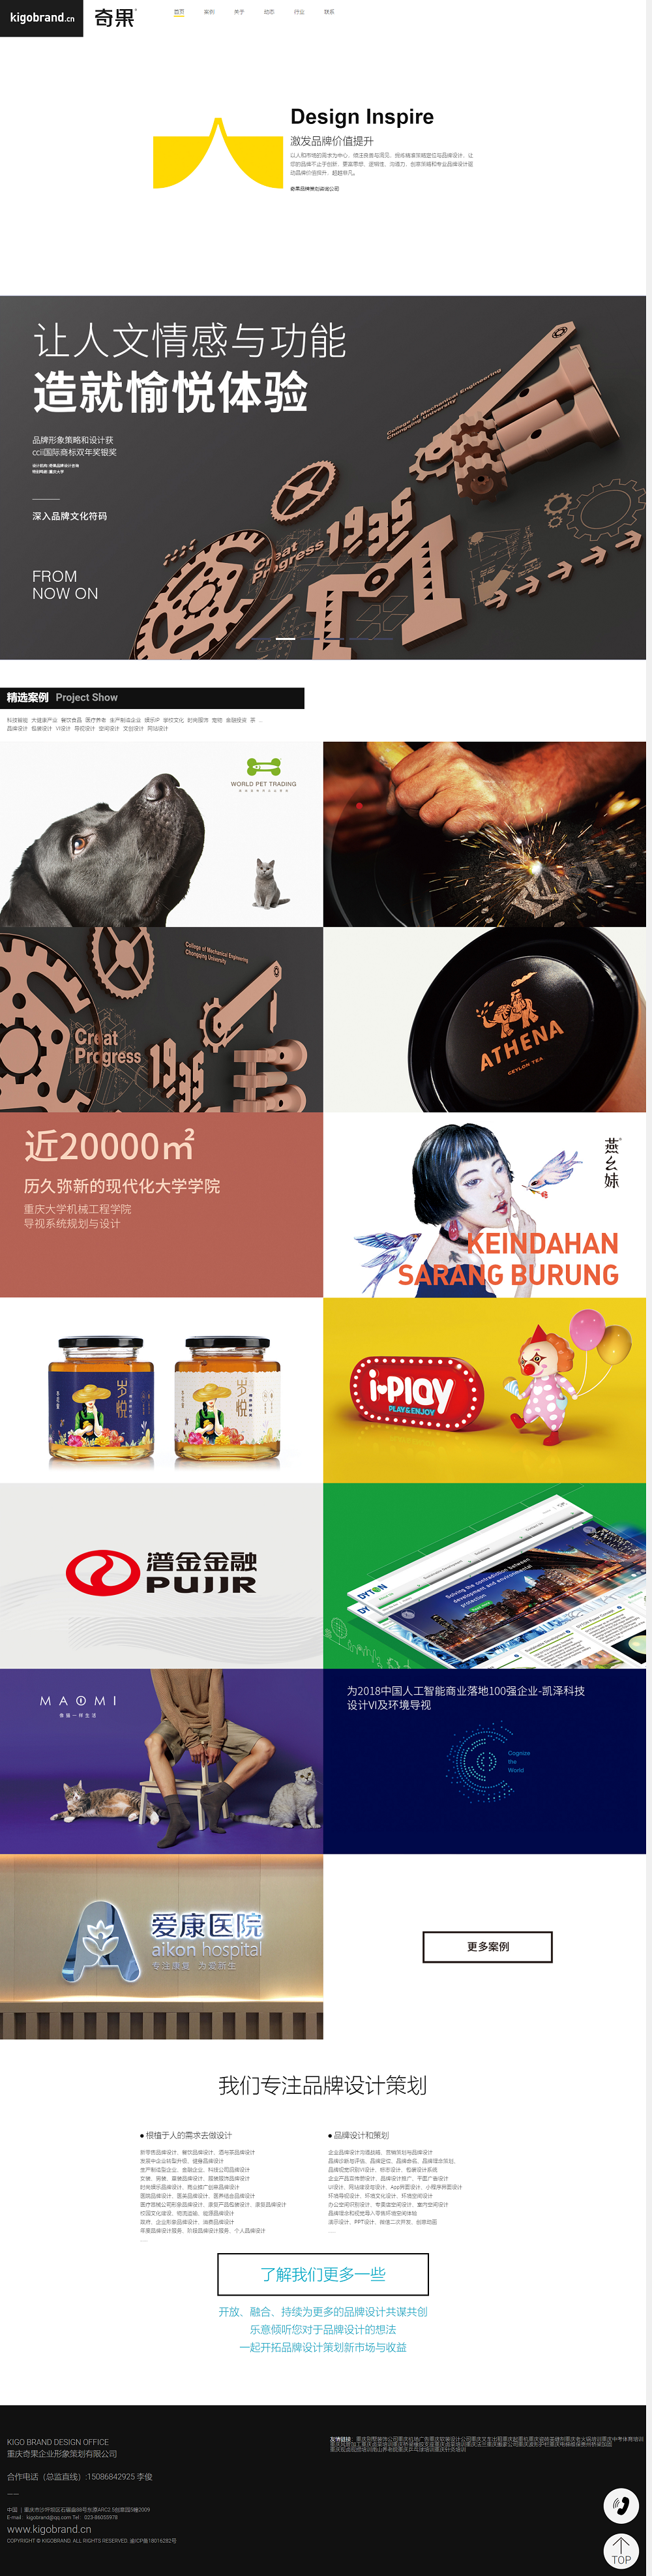 重庆奇果品牌设计网站建设案例